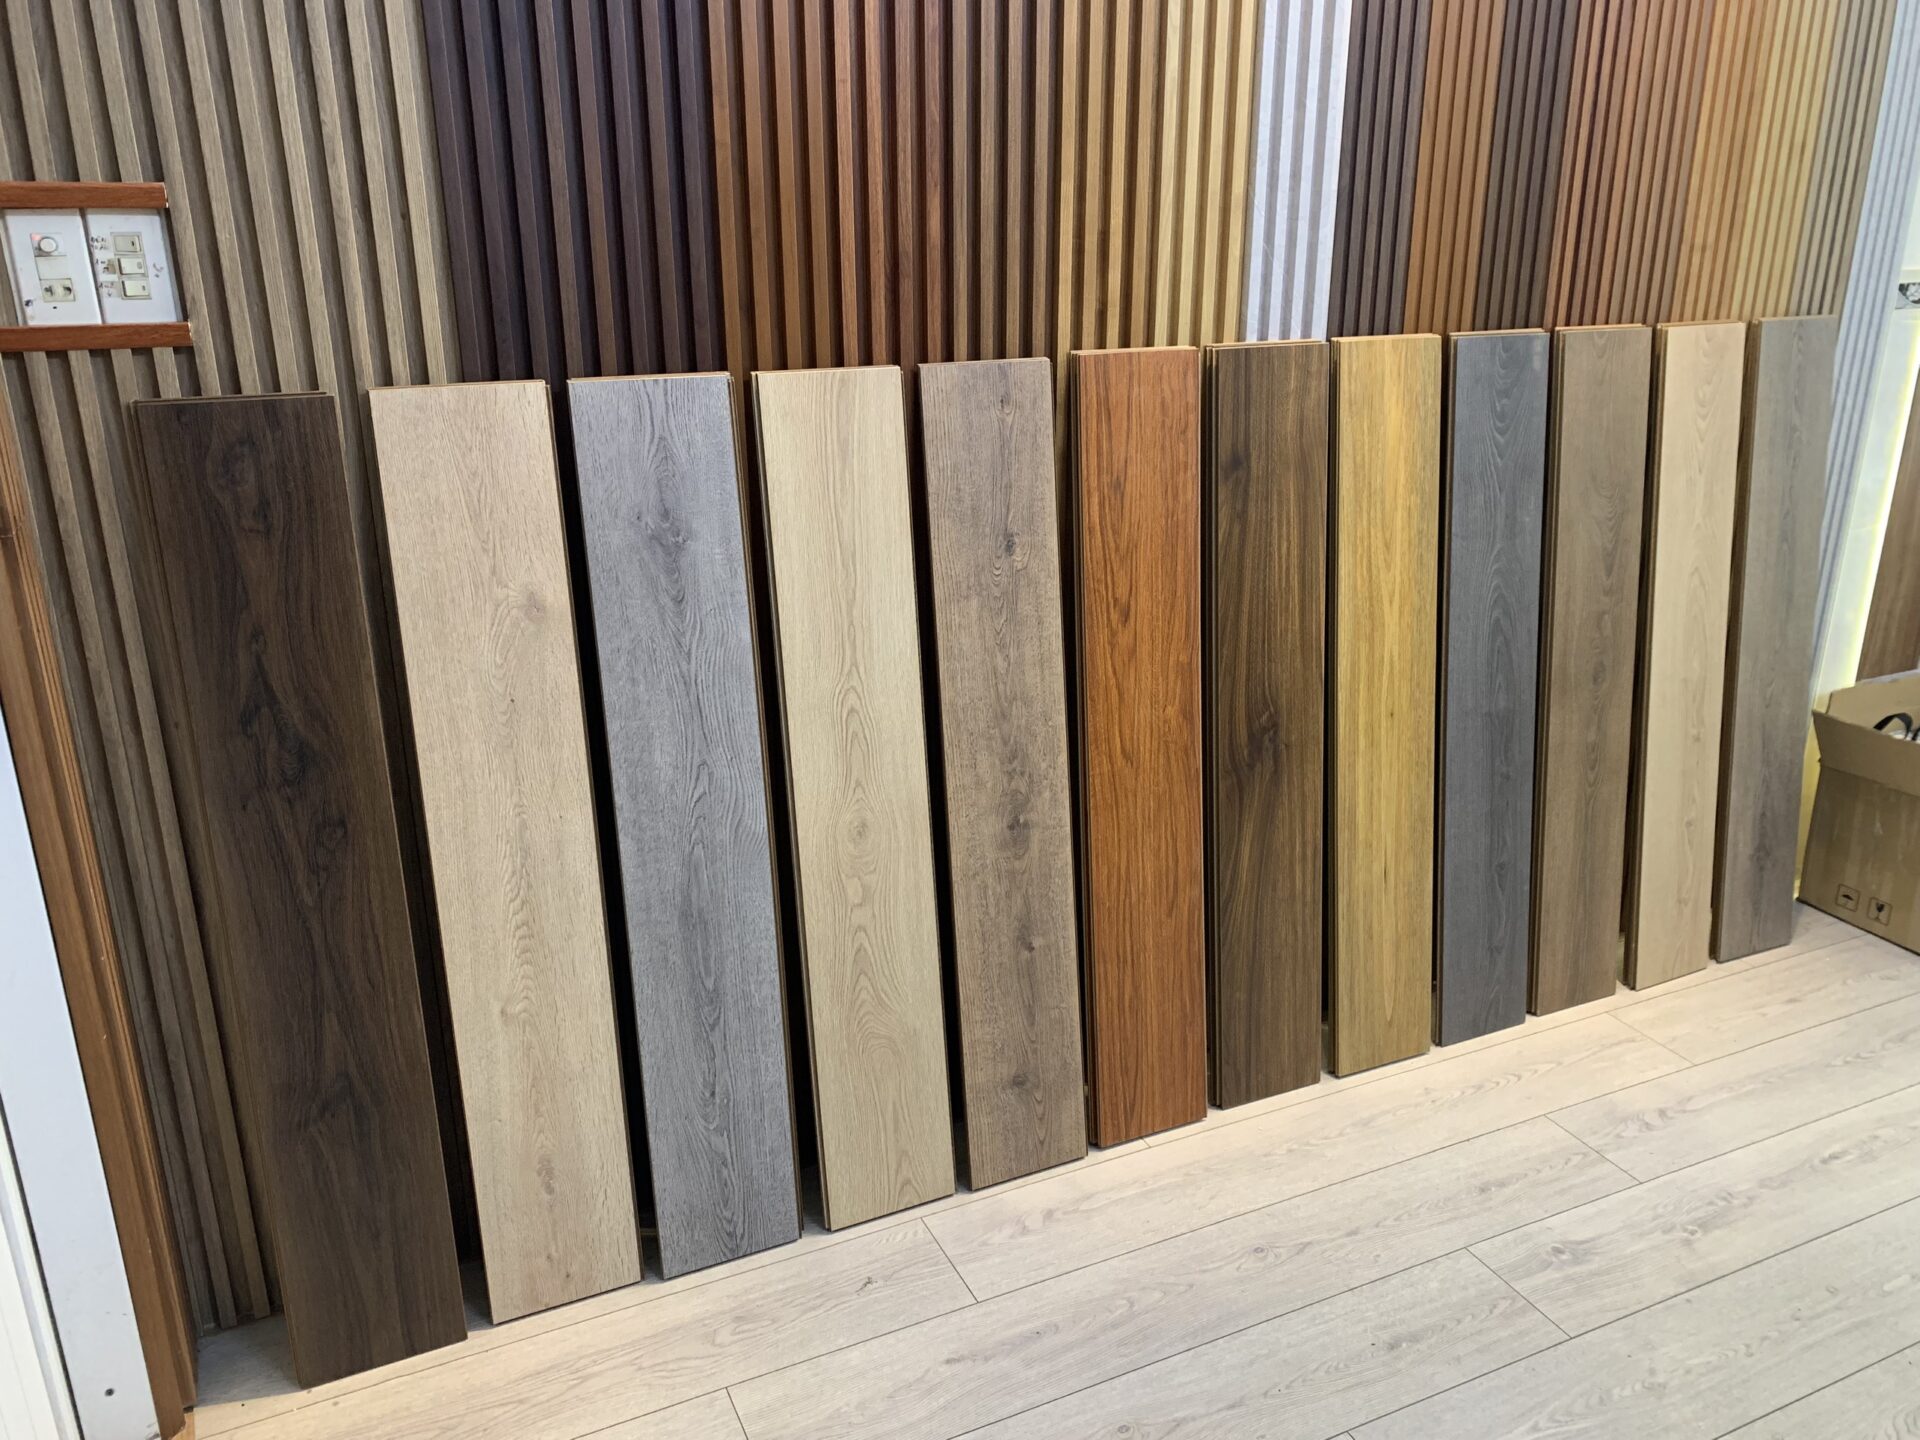 Thanh sàn gỗ công nghiệp Hamilton tại showroom Floordi Bình Định